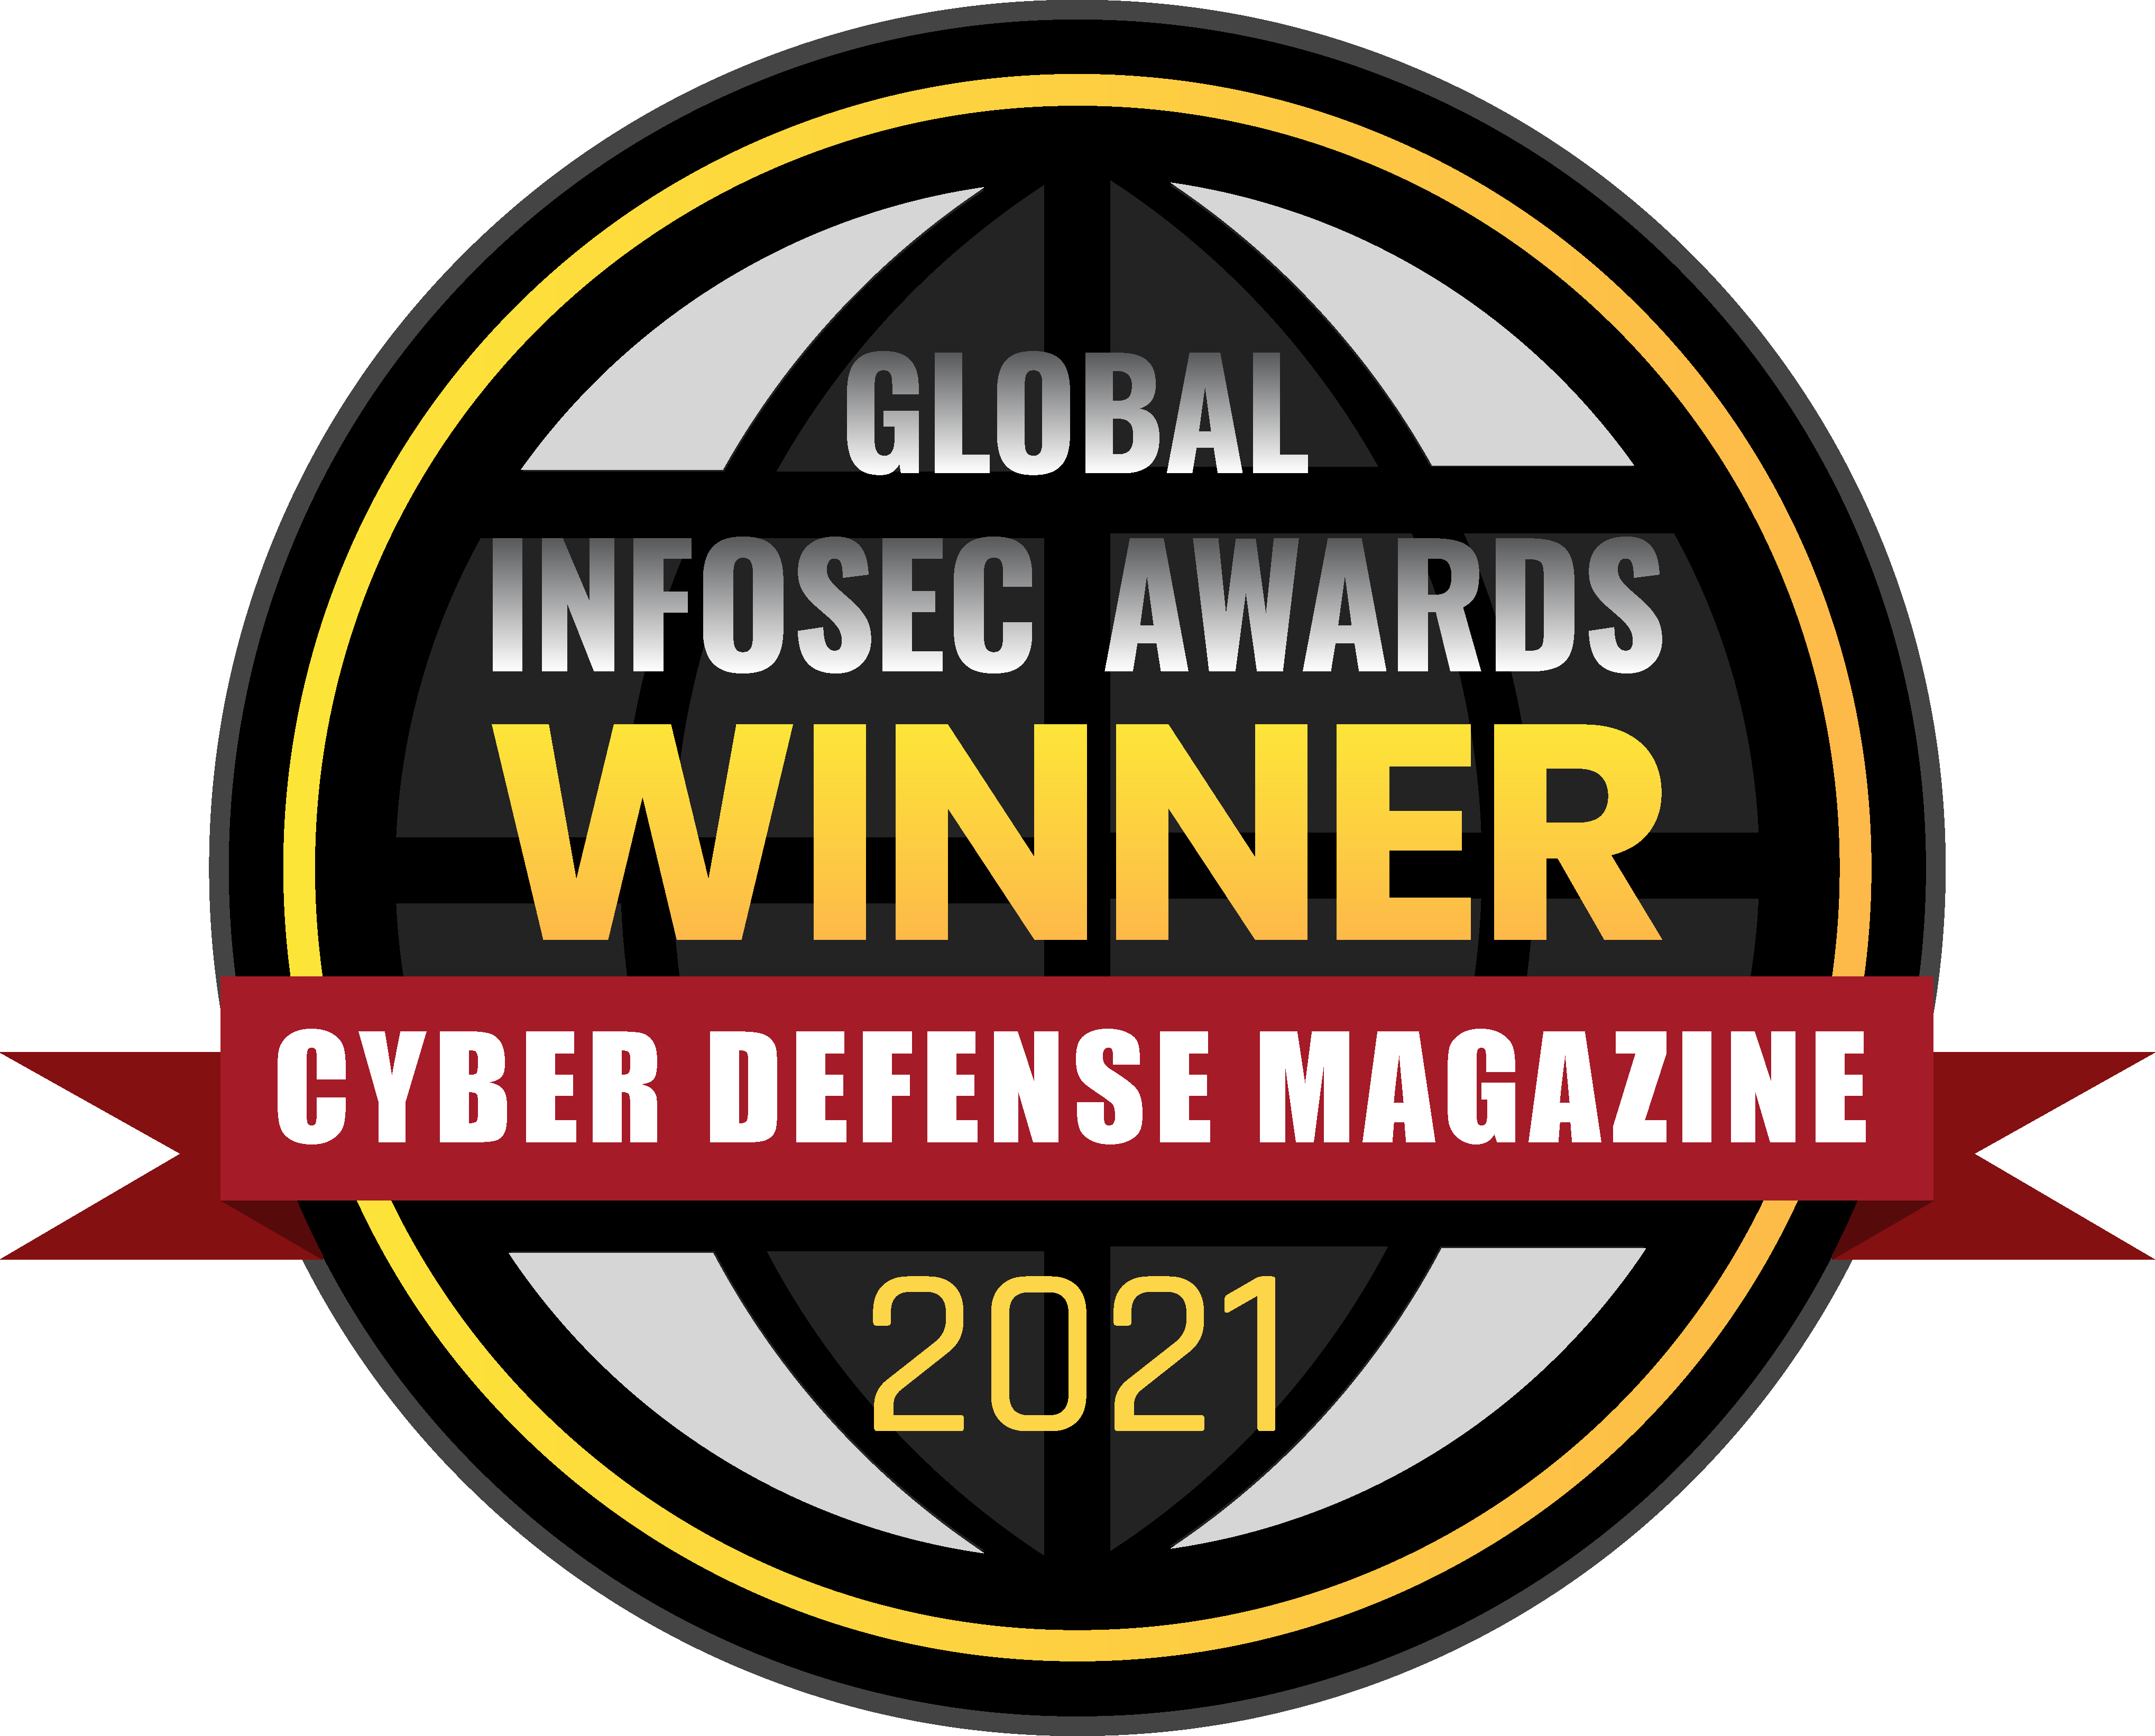 Cyber Defense Magazine: Global InfoSec Awards 2021 - Winner